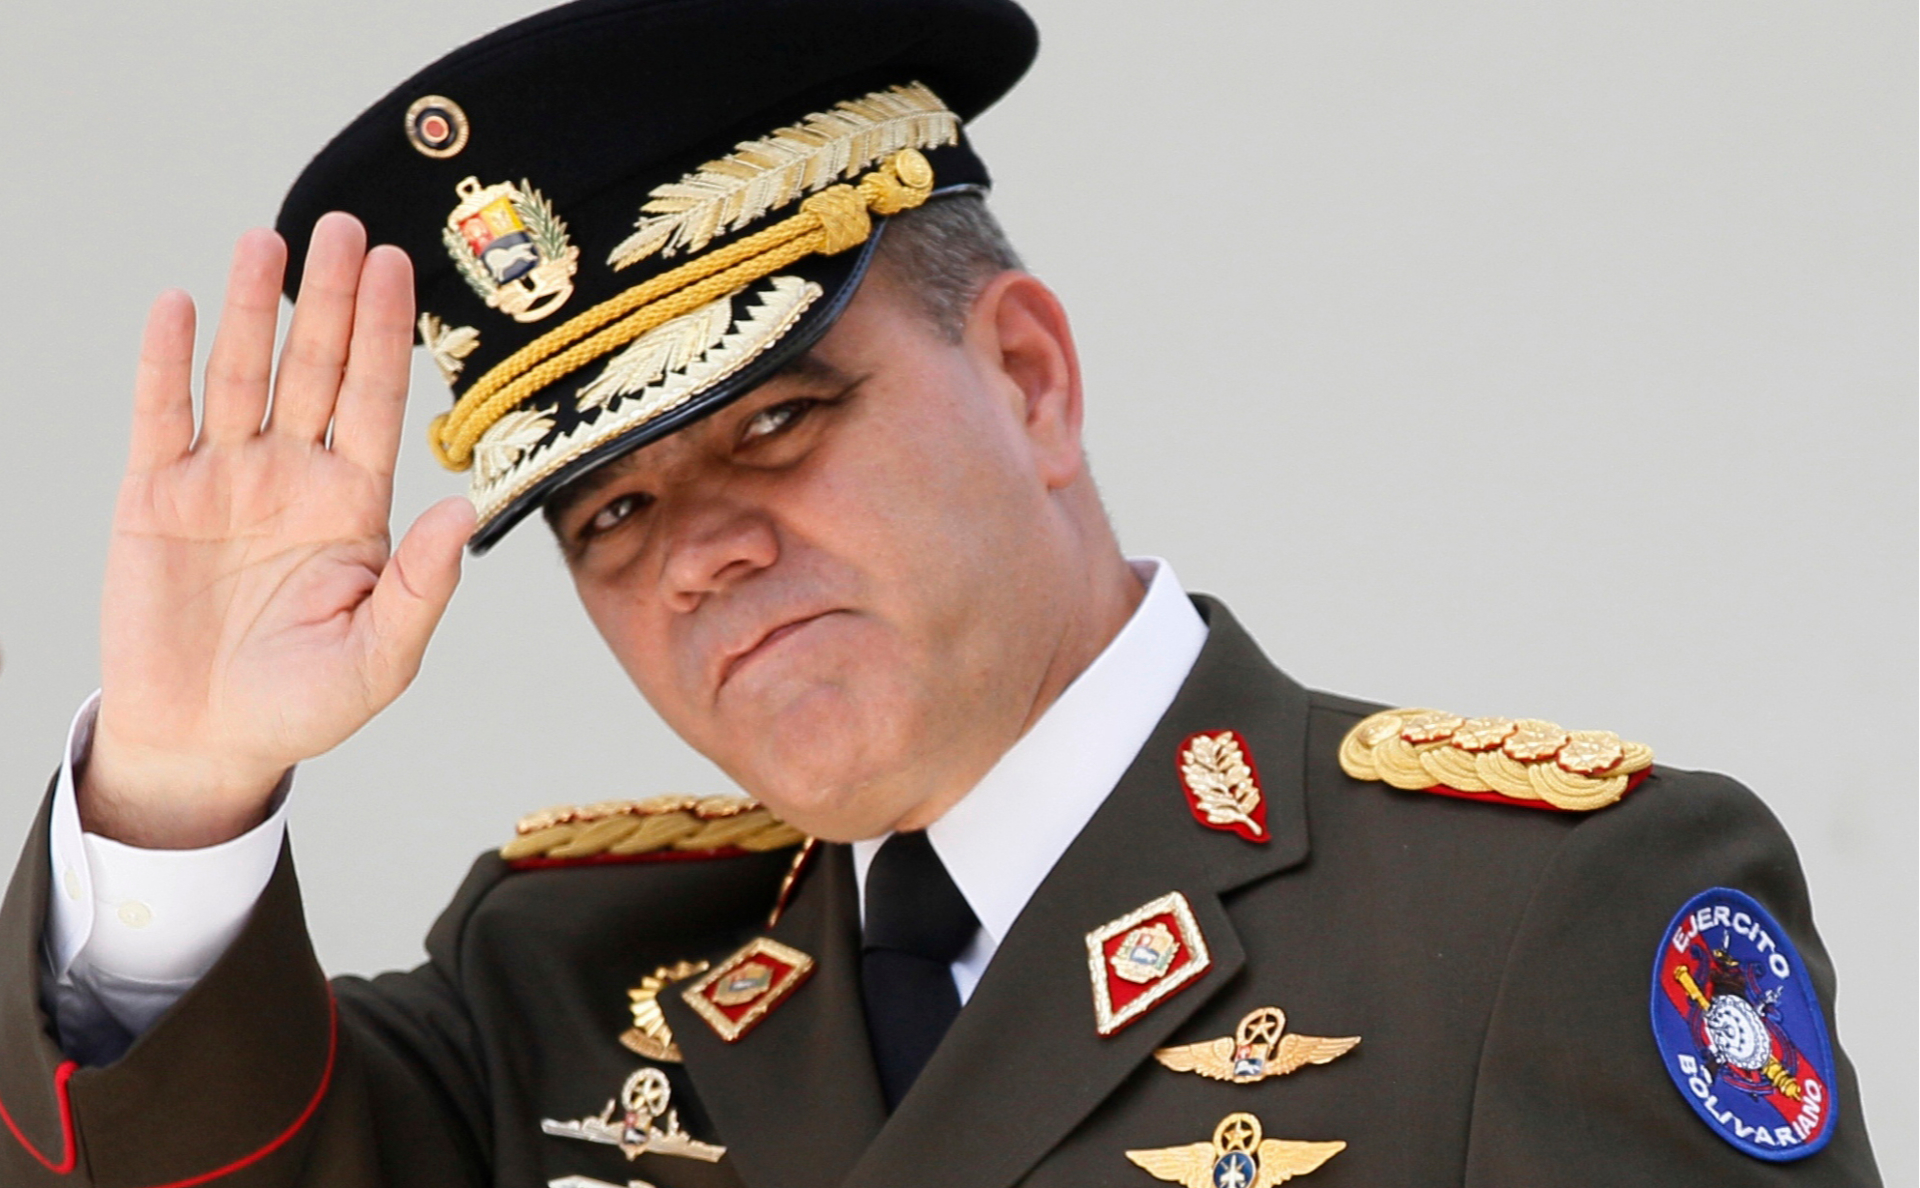 Министр обороны Венесуэлы Владимир Падрино Лопес